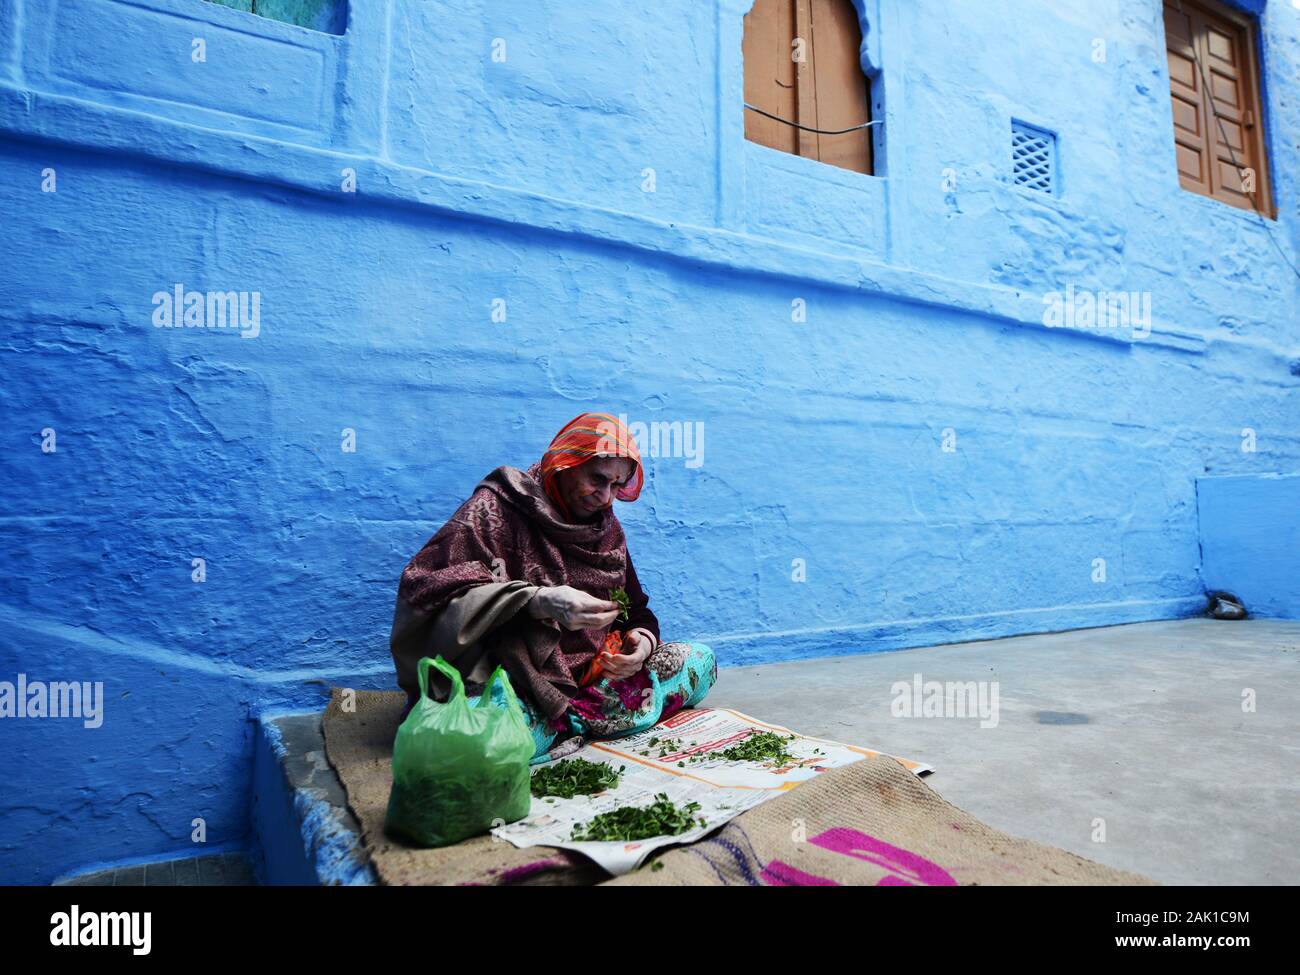 The narrow streets in the Blue city of Jodhpur, India. Stock Photo